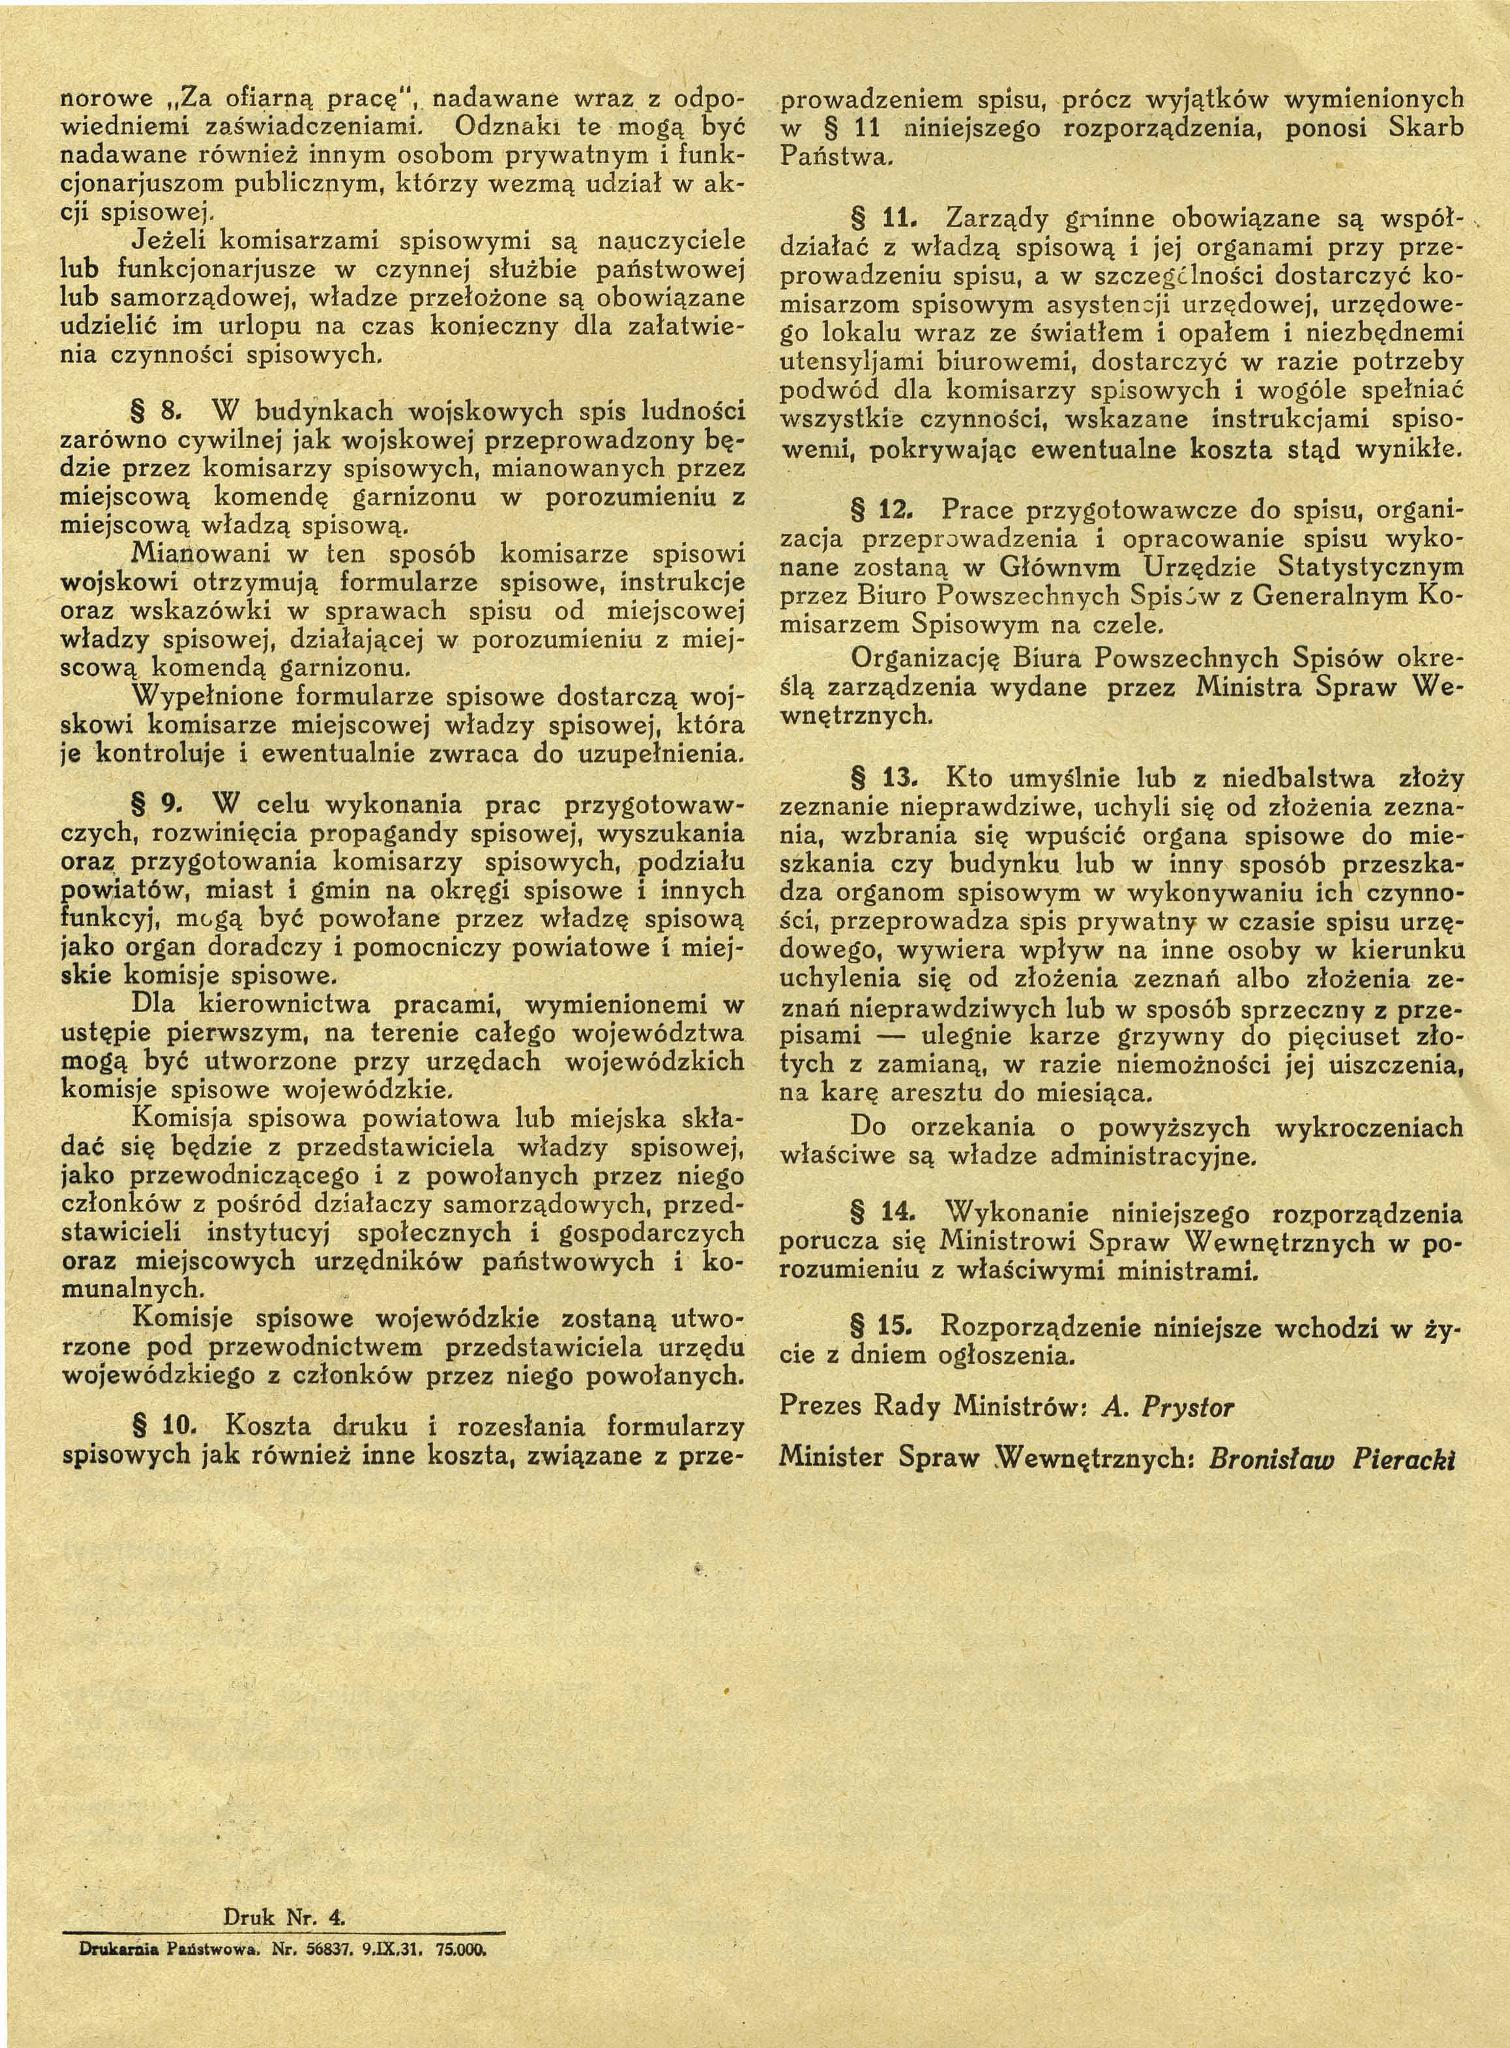 Rozporządzenie Rady Ministrów z dnia 2 września 1931 r. w sprawie przeprowadzenia drugiego powszechnego spisu ludności.